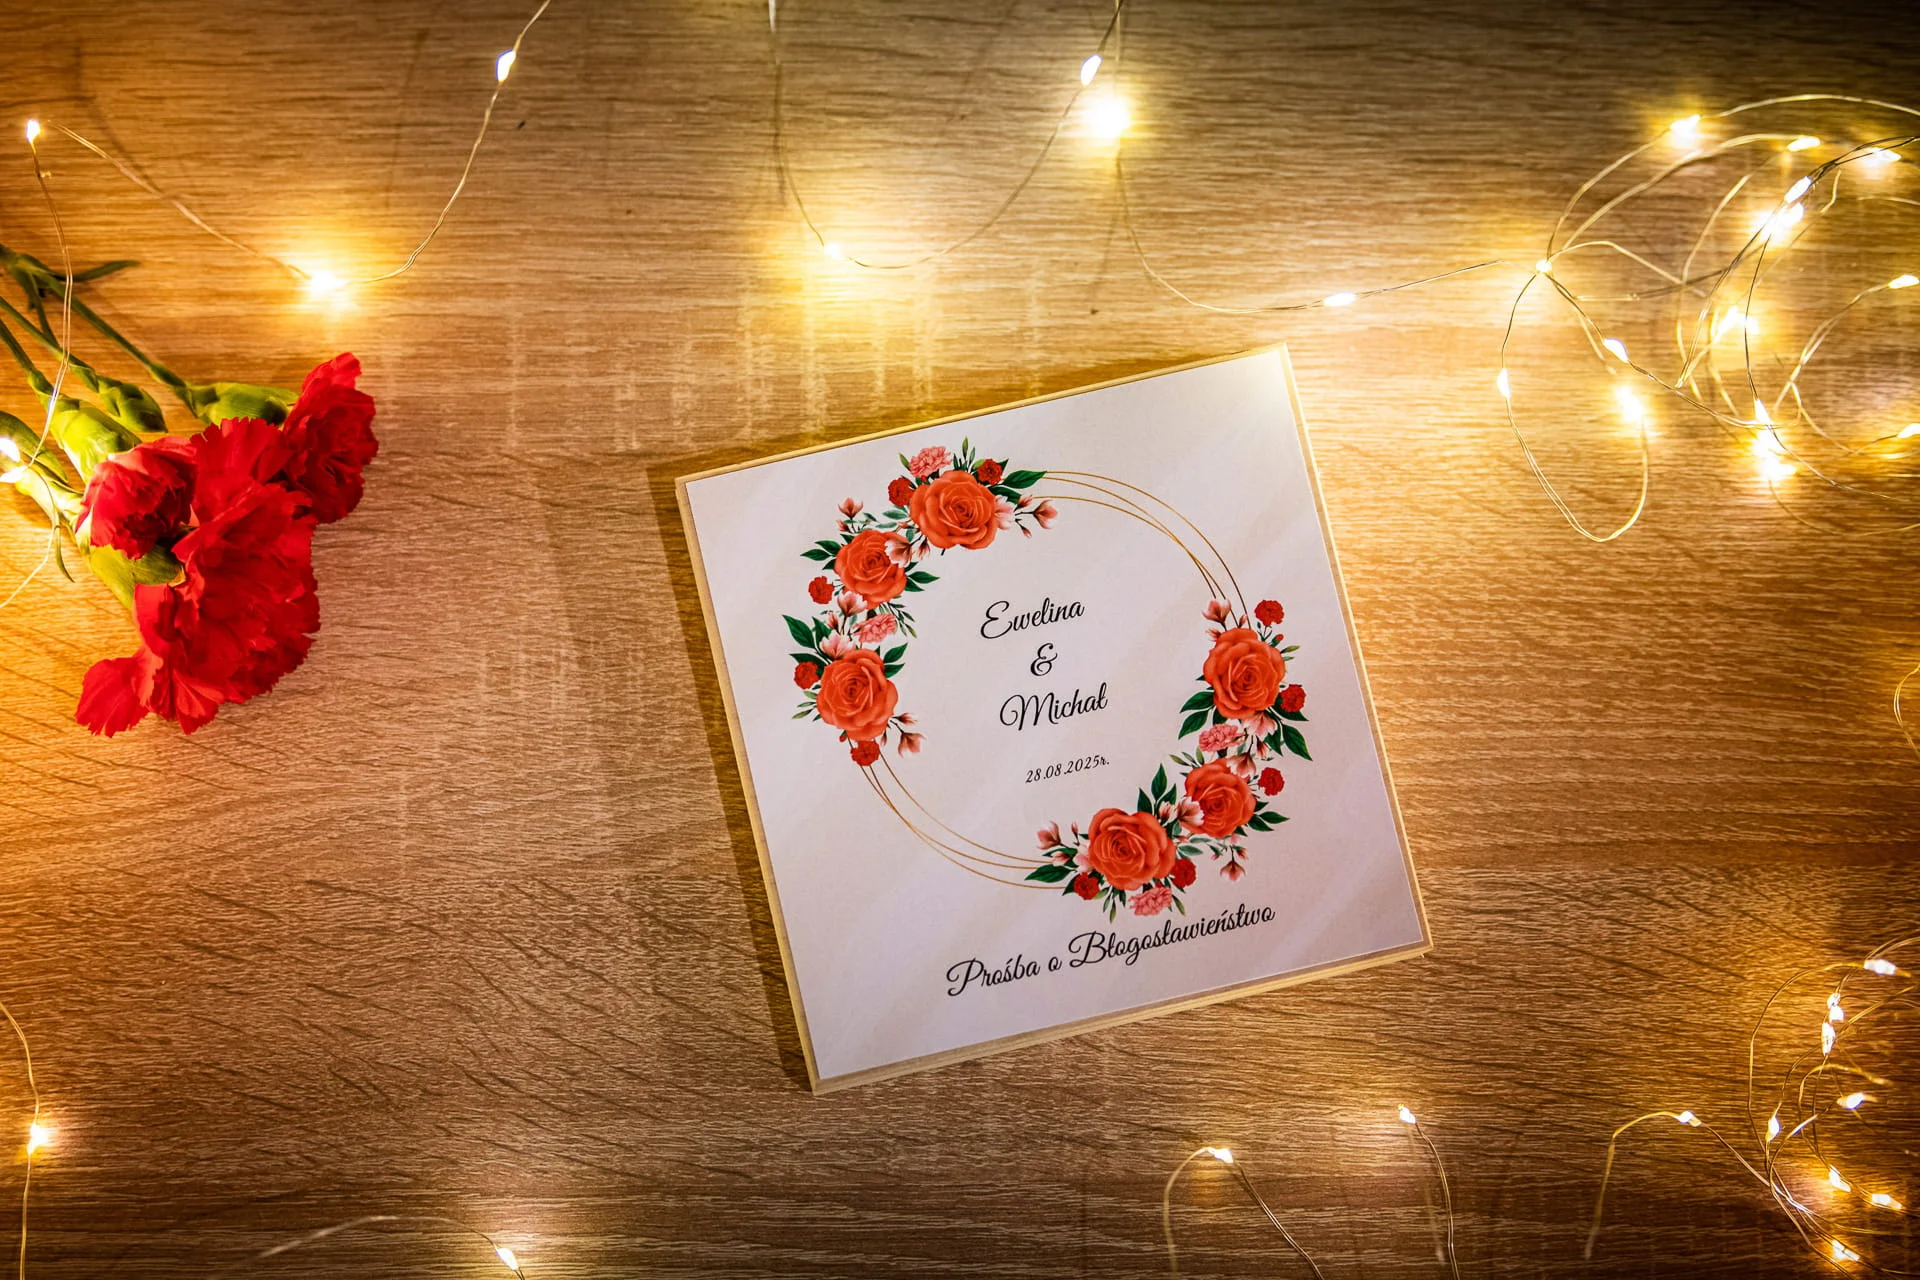 Prośba o błogosławieństwo rodziców w drewnianym pudełeczku ze złotym okręgiem i czerwonymi różami Ślub marzeń